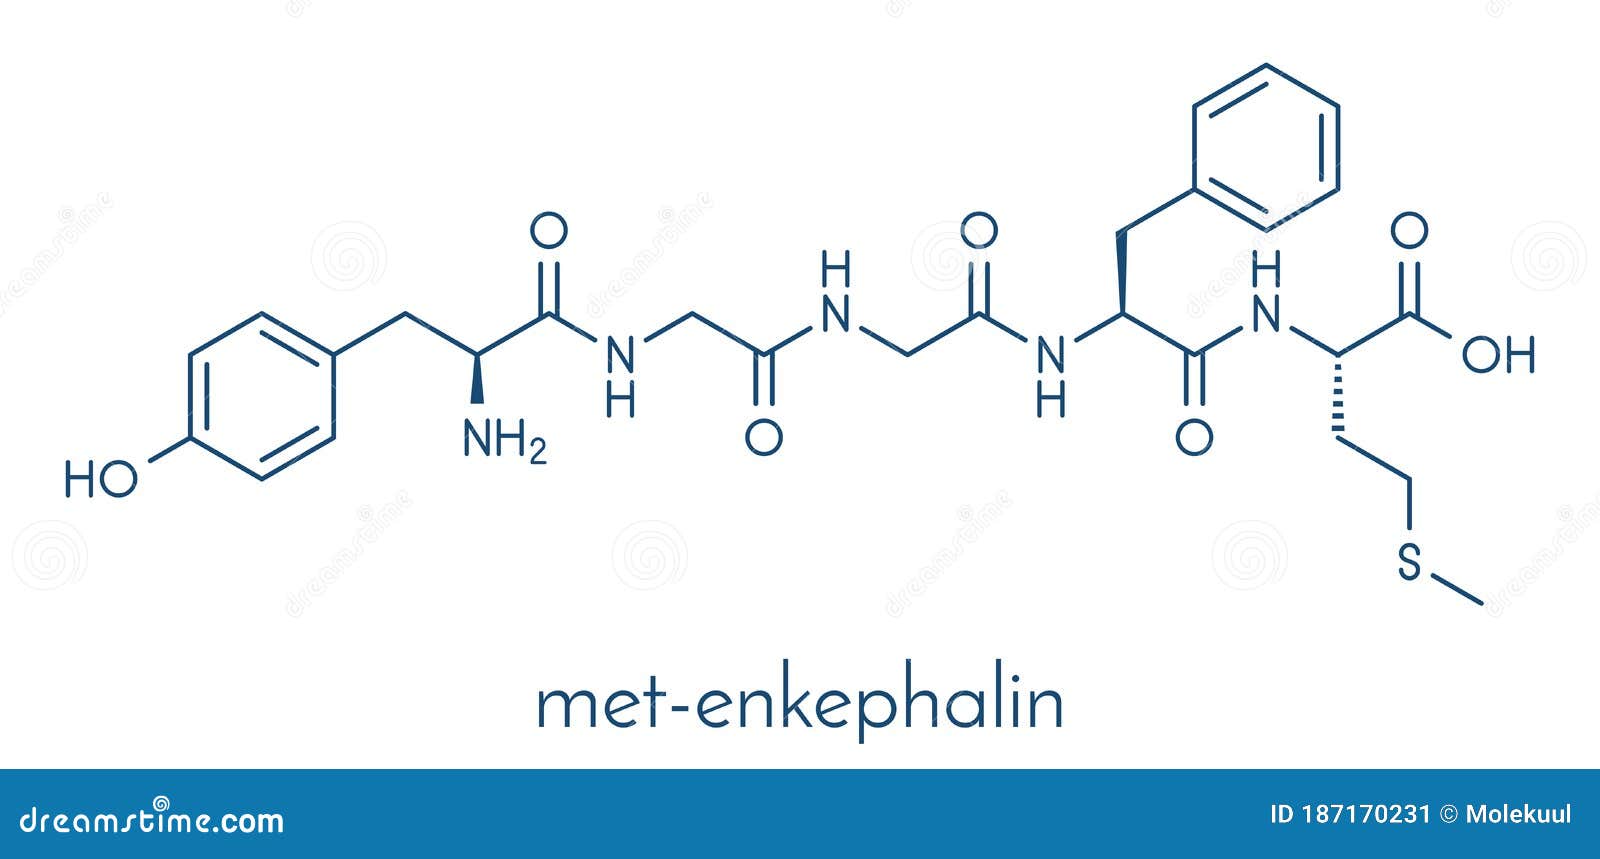 met-enkephalin endogenous opioid peptide molecule. skeletal formula.